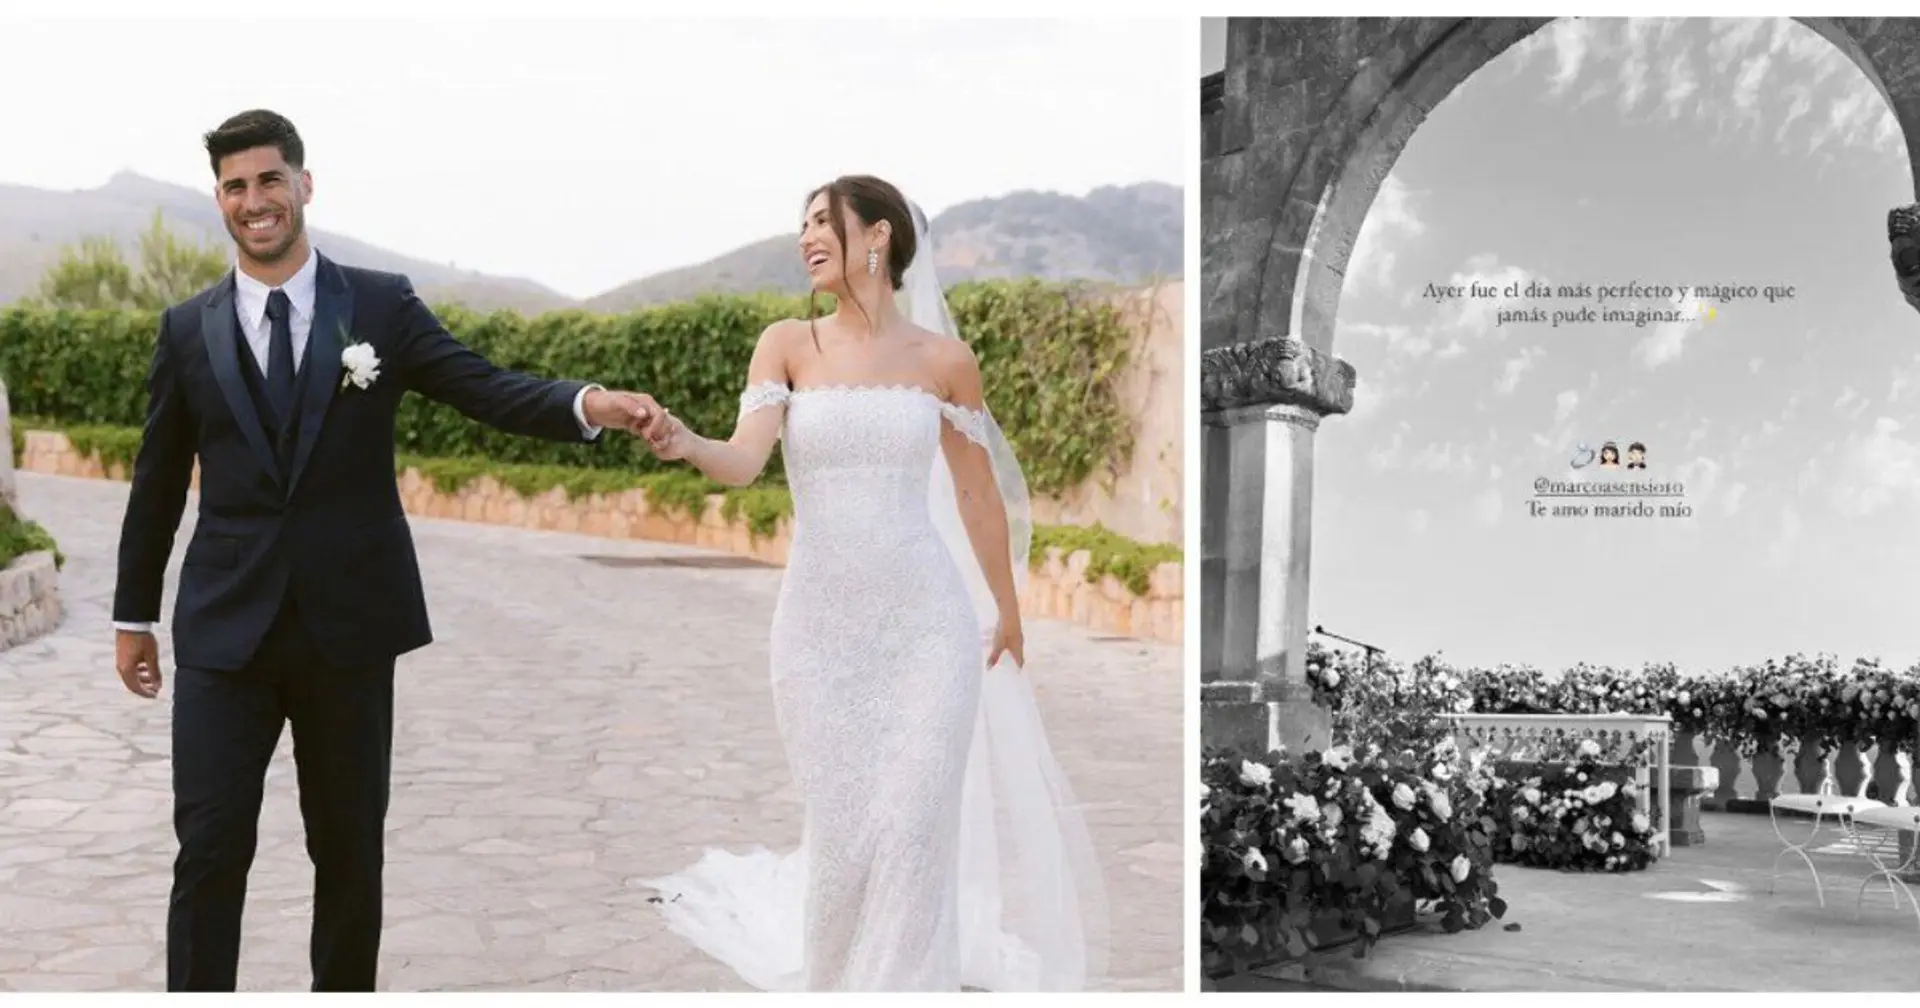 Asensio hat geheiratet! Marcos Hochzeit wurde von seinen ehemaligen Mannschaftskameraden besucht